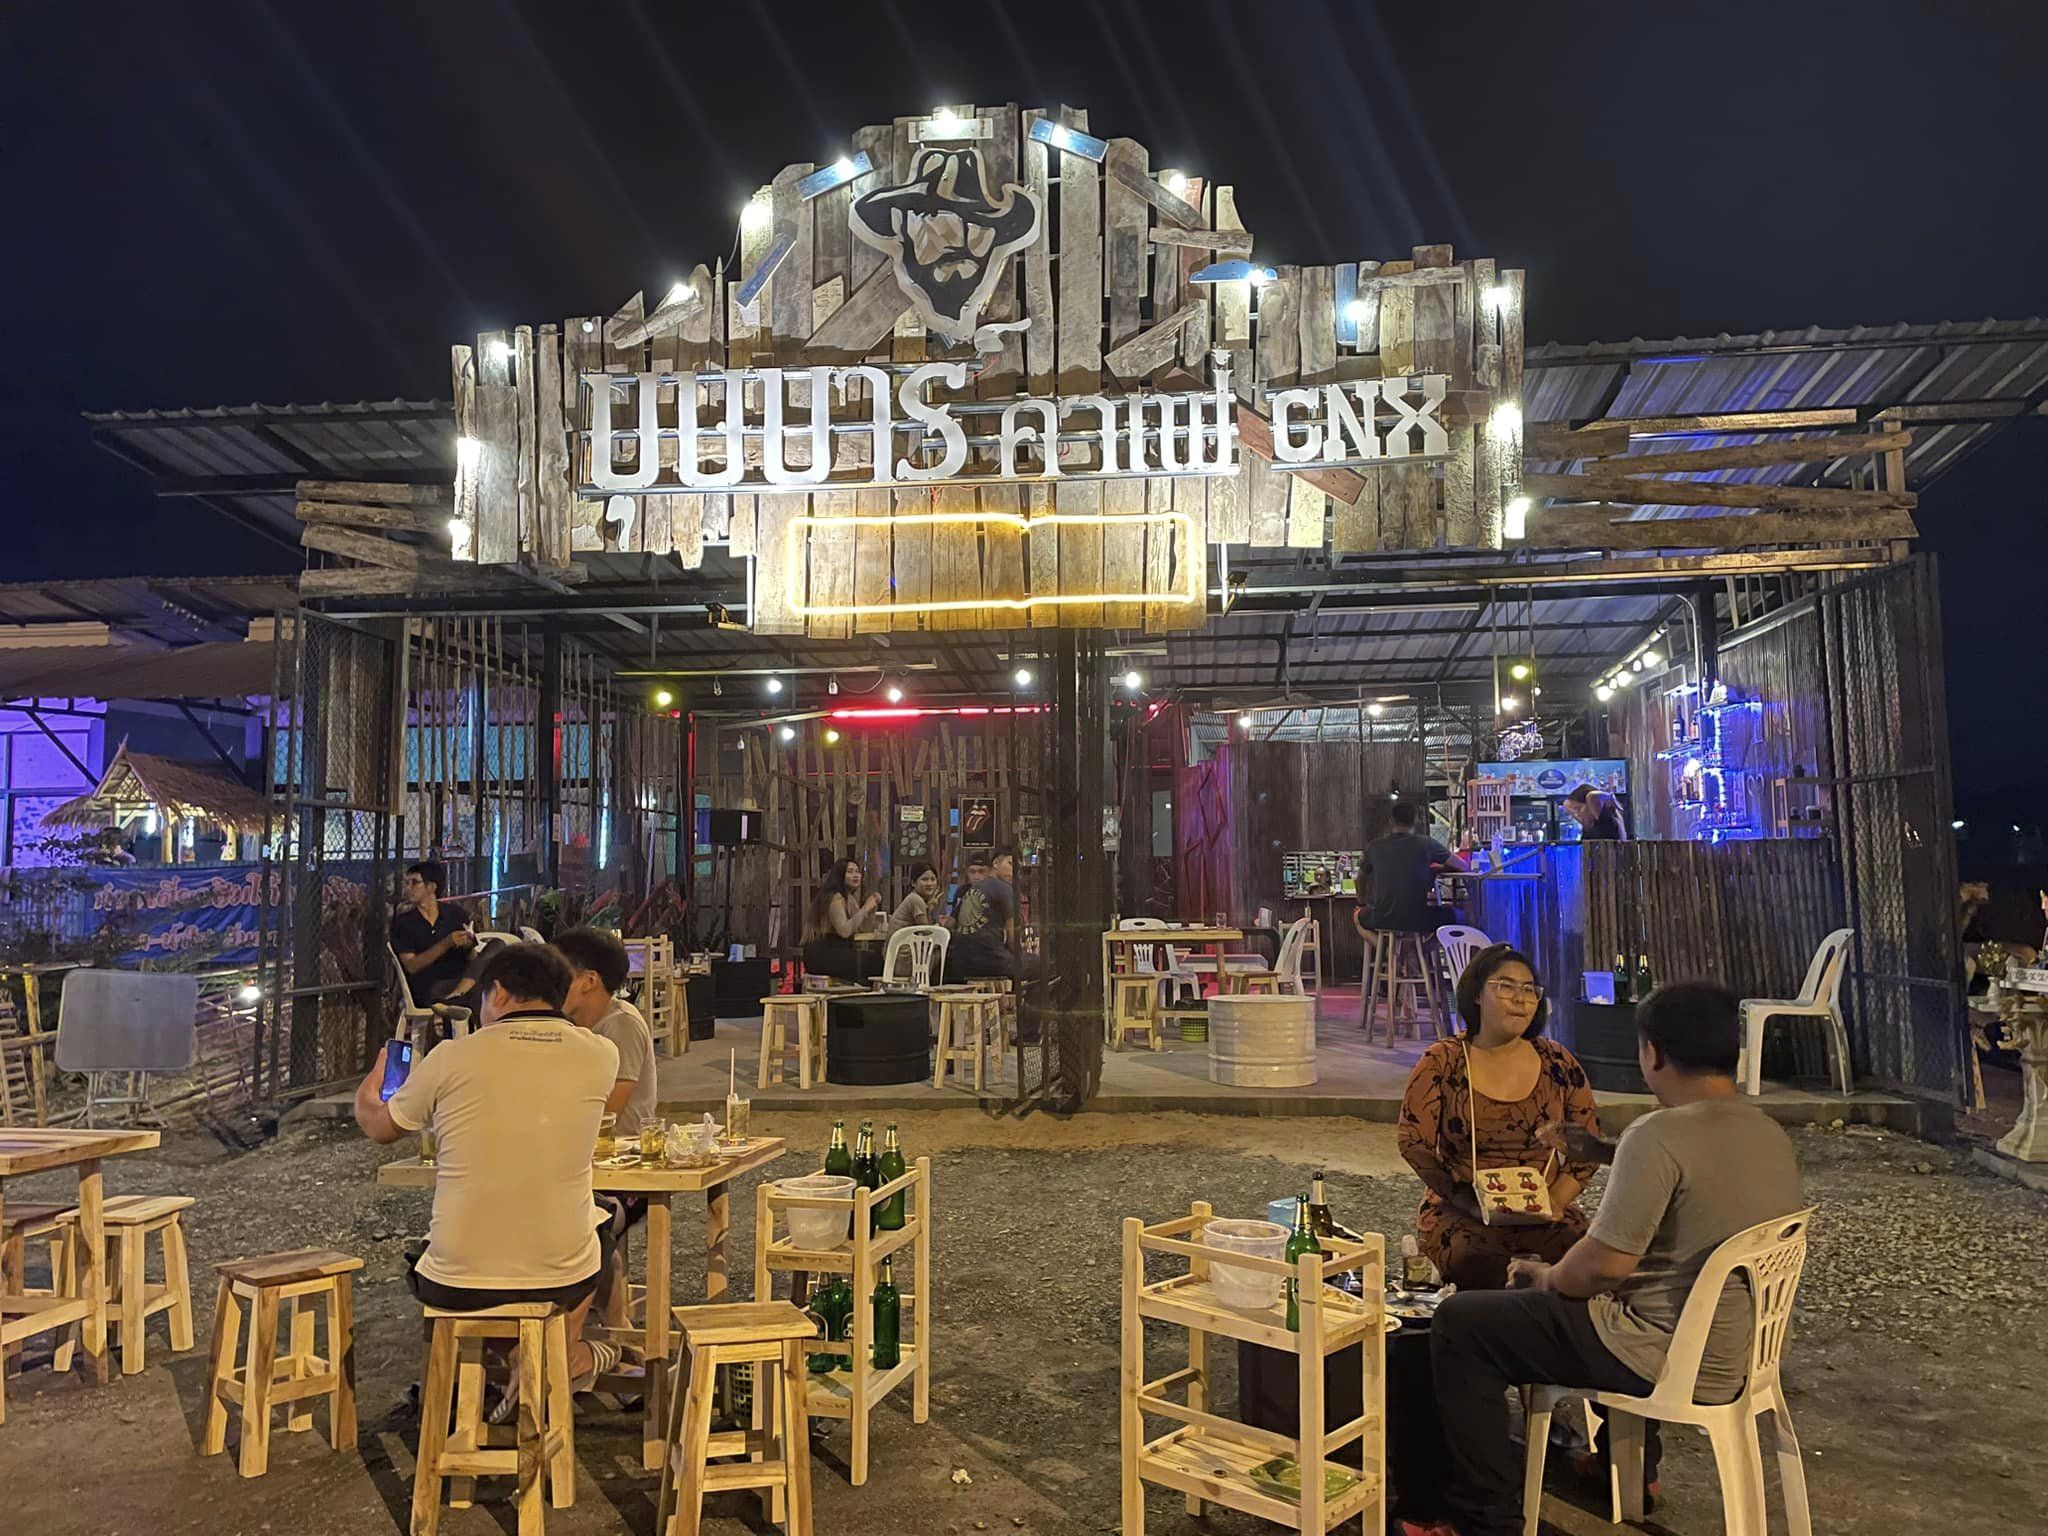 บุษบาร์ คาเฟ่เชียงใหม่ (บุษบาร์ คาเฟ่เชียงใหม่) : Chiang Mai (เชียงใหม่)